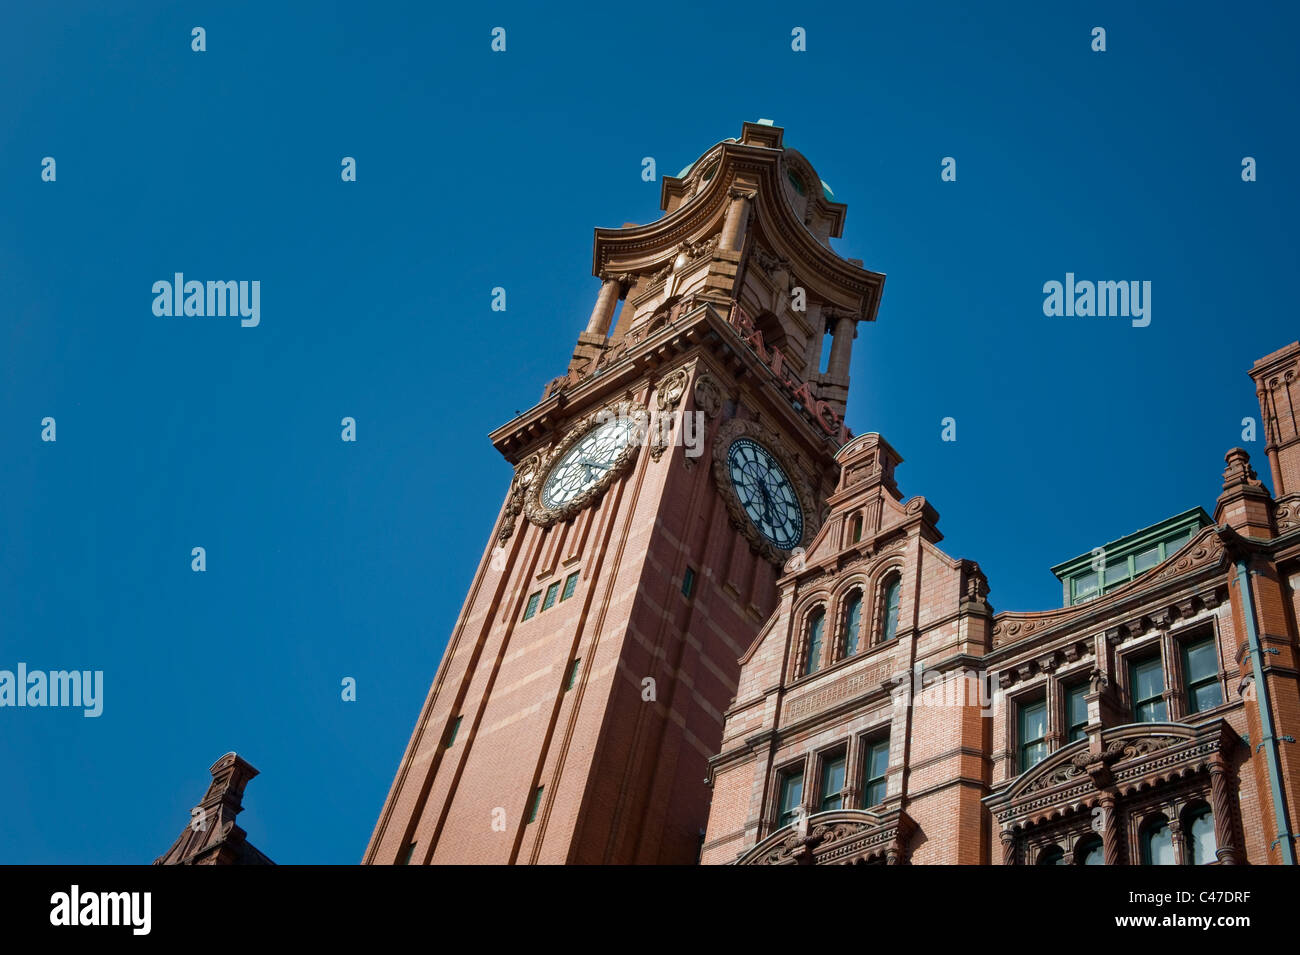 La tour de l'horloge de l'hôtel palais baroque éclectique, Oxford Road, Manchester. Banque D'Images